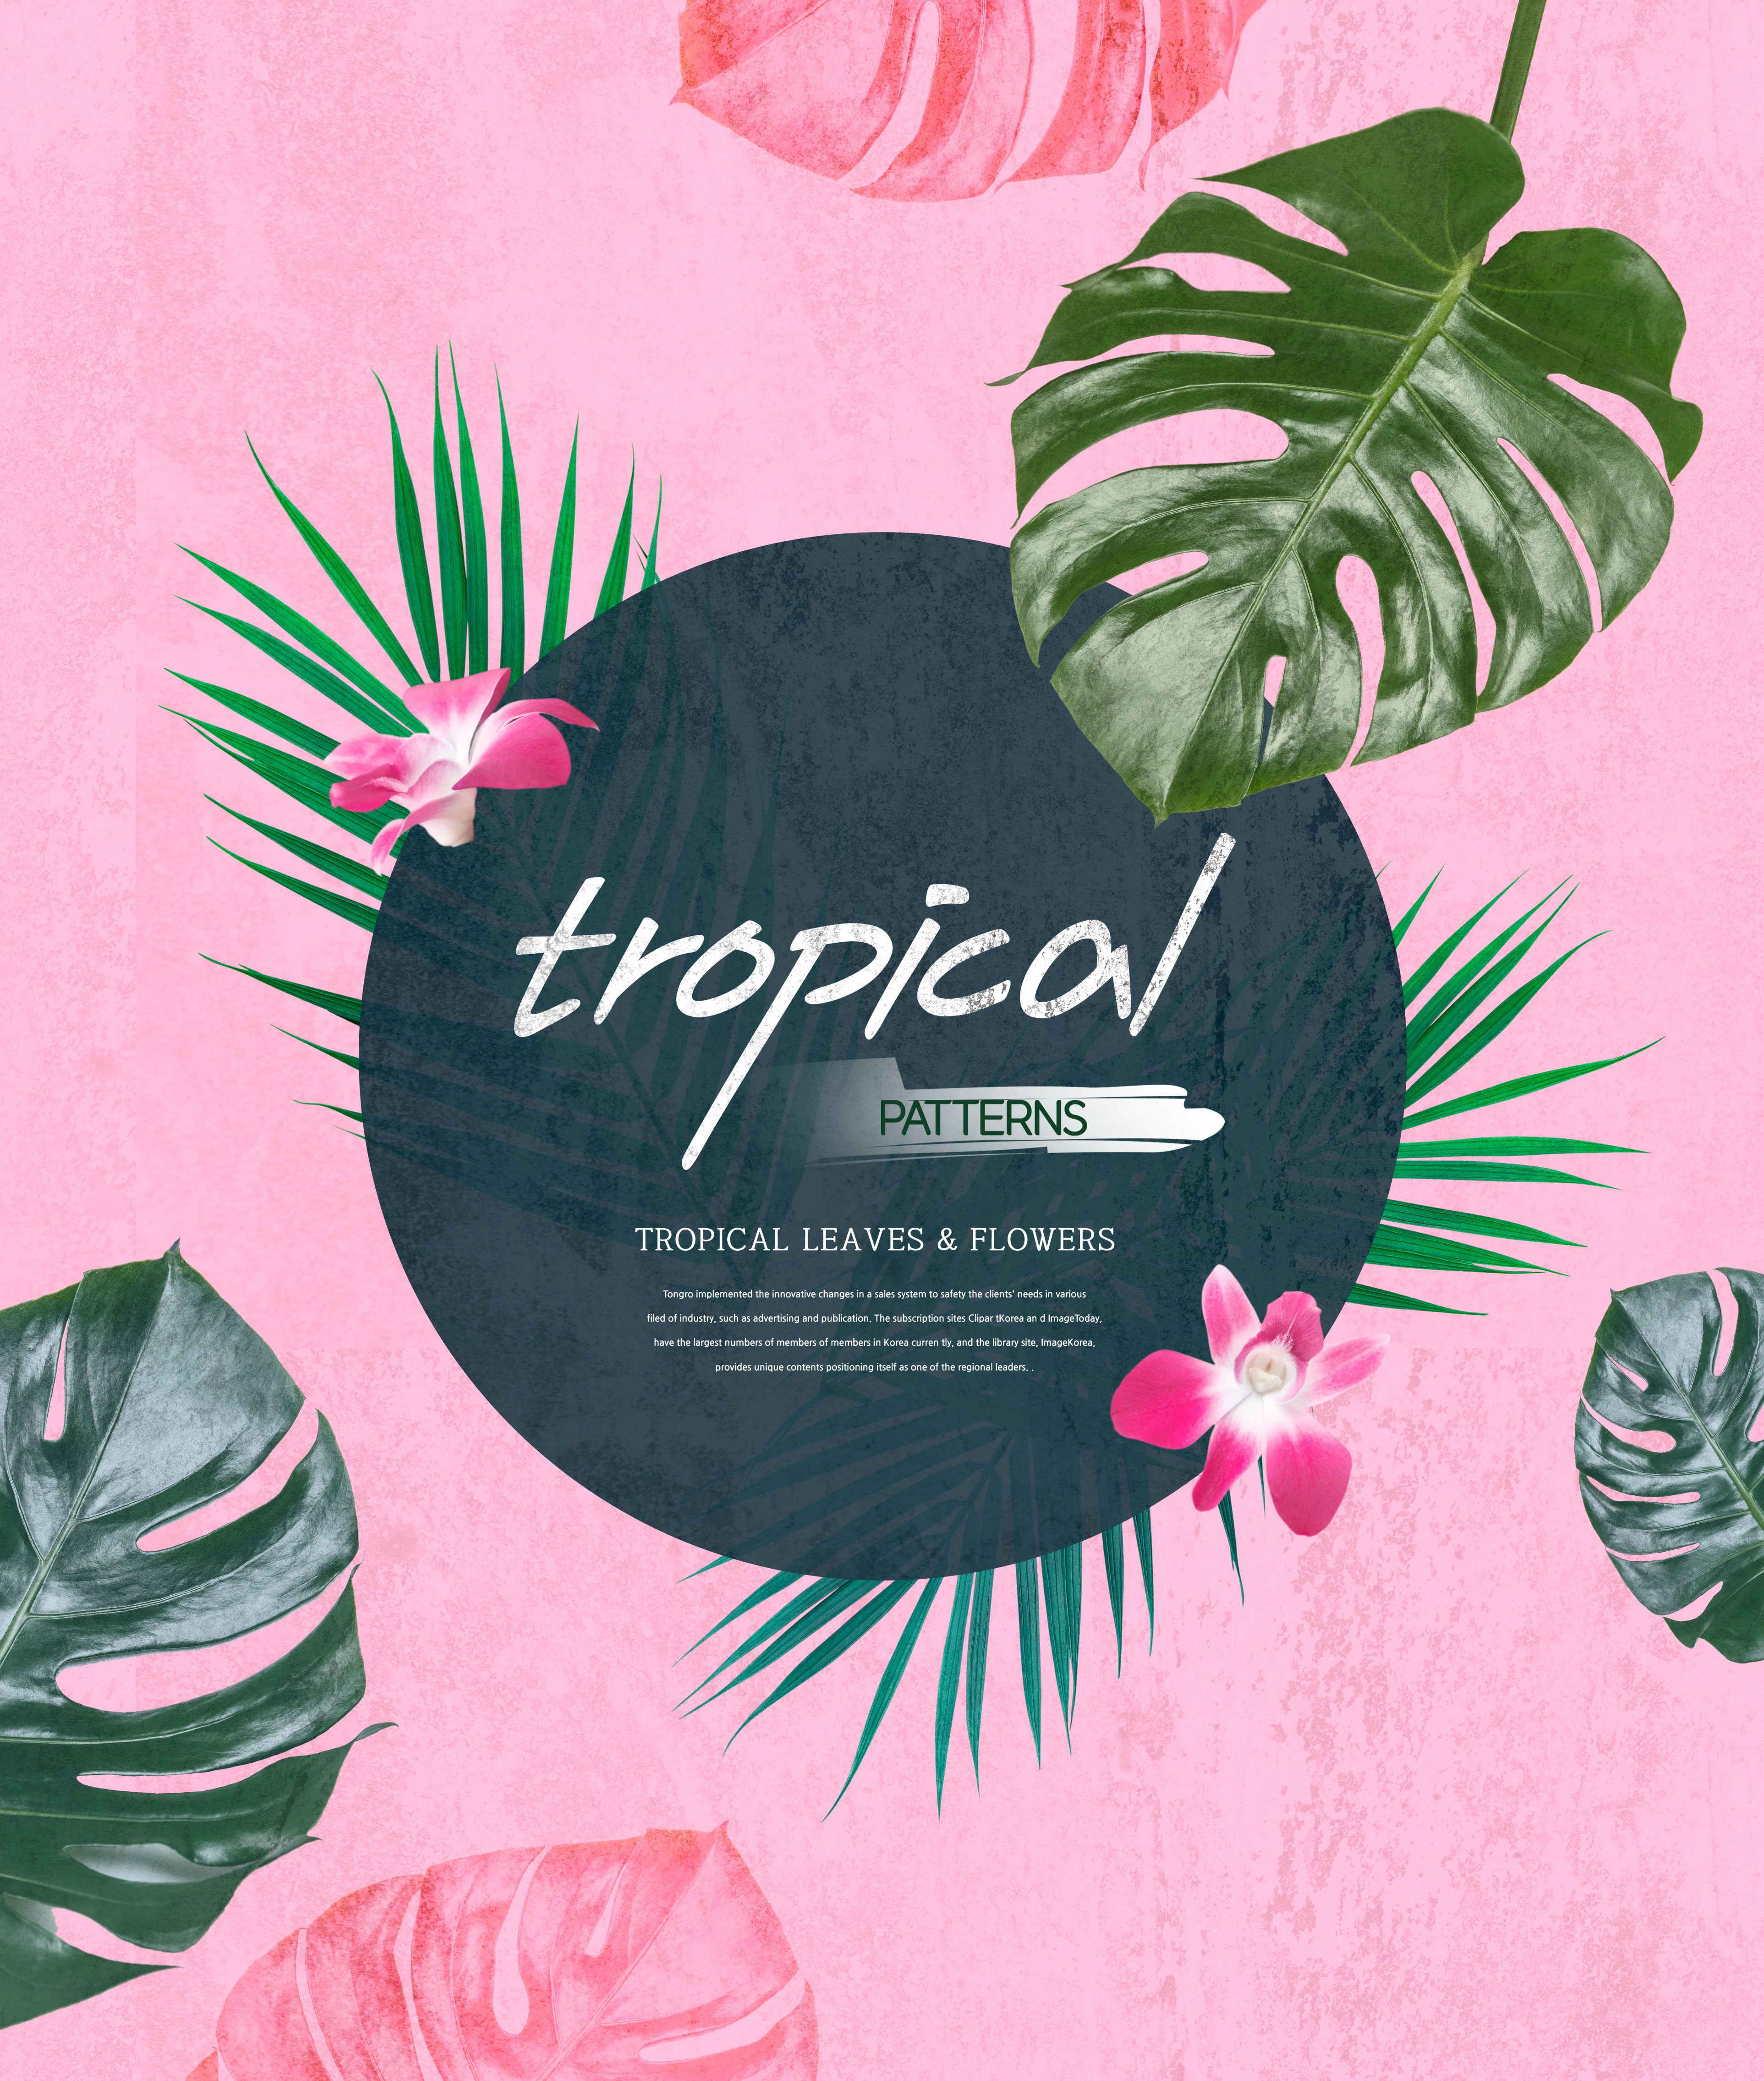 热带主题叶子&花卉图案海报设计素材插图(4)